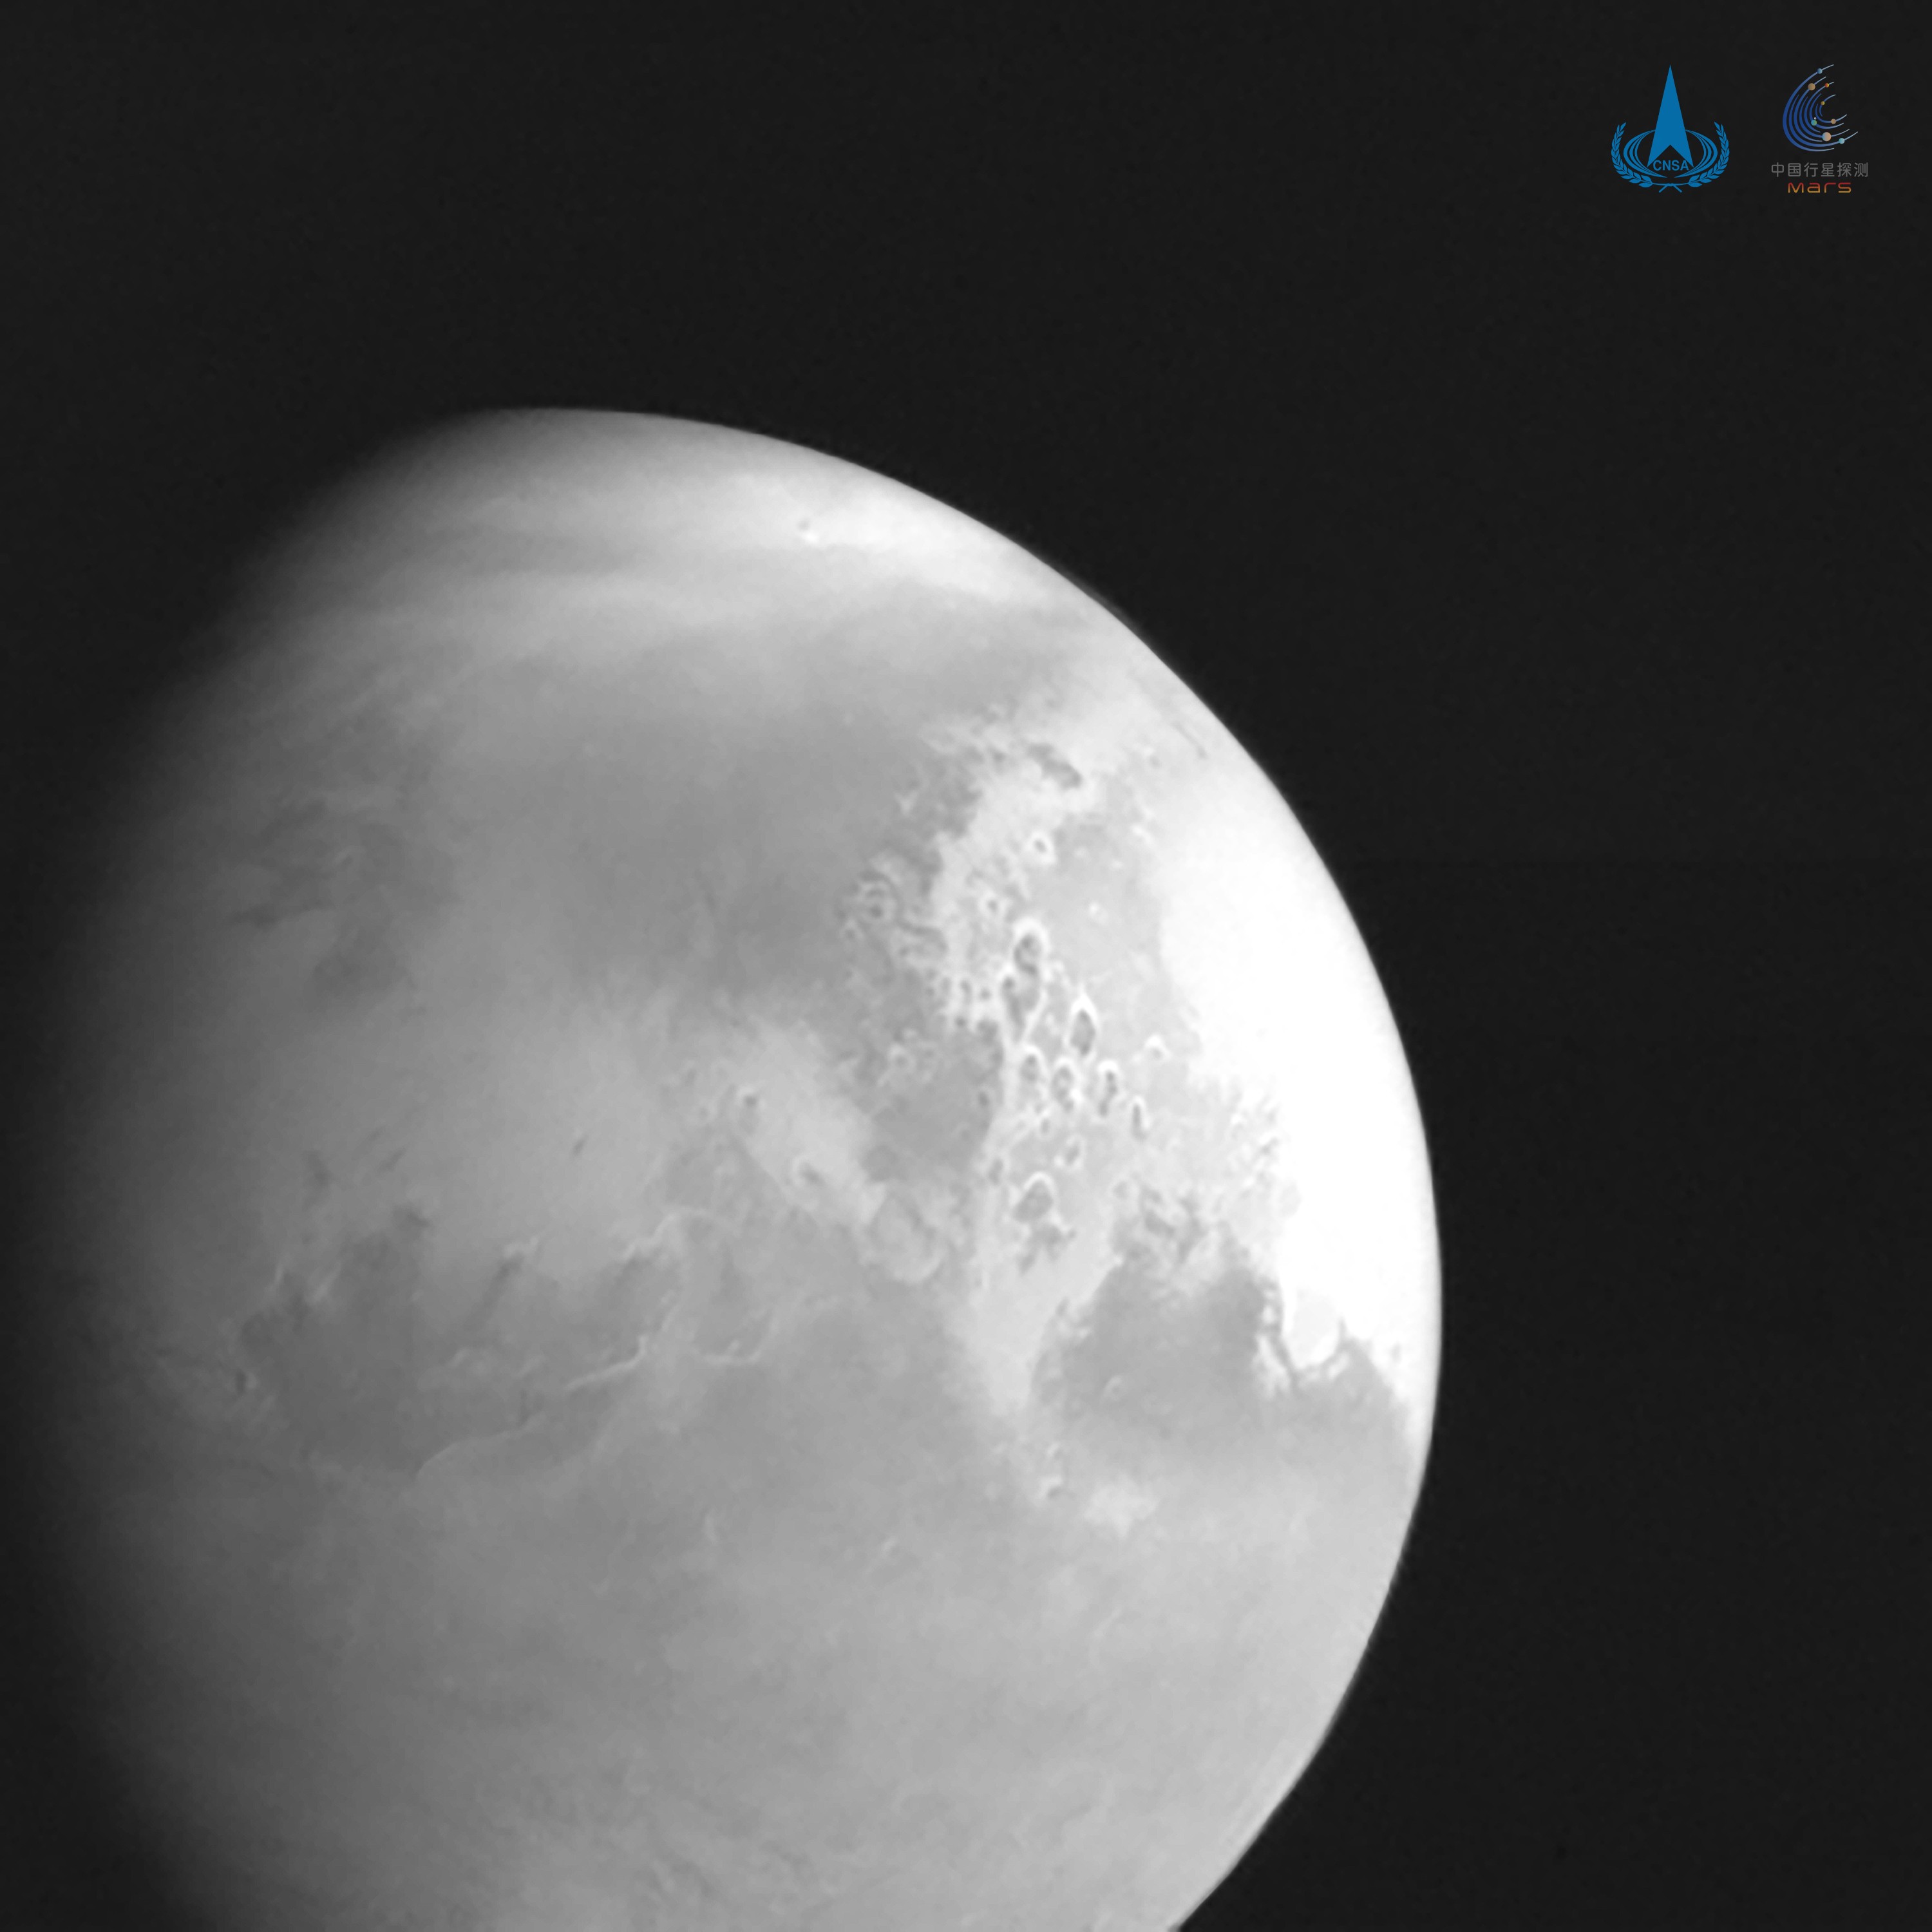 Foto de Marte tirada pela sonda chinesa Tianwen-1 a 2,2 milhões de quilômetros do planeta (Foto: CNSA/PEC)